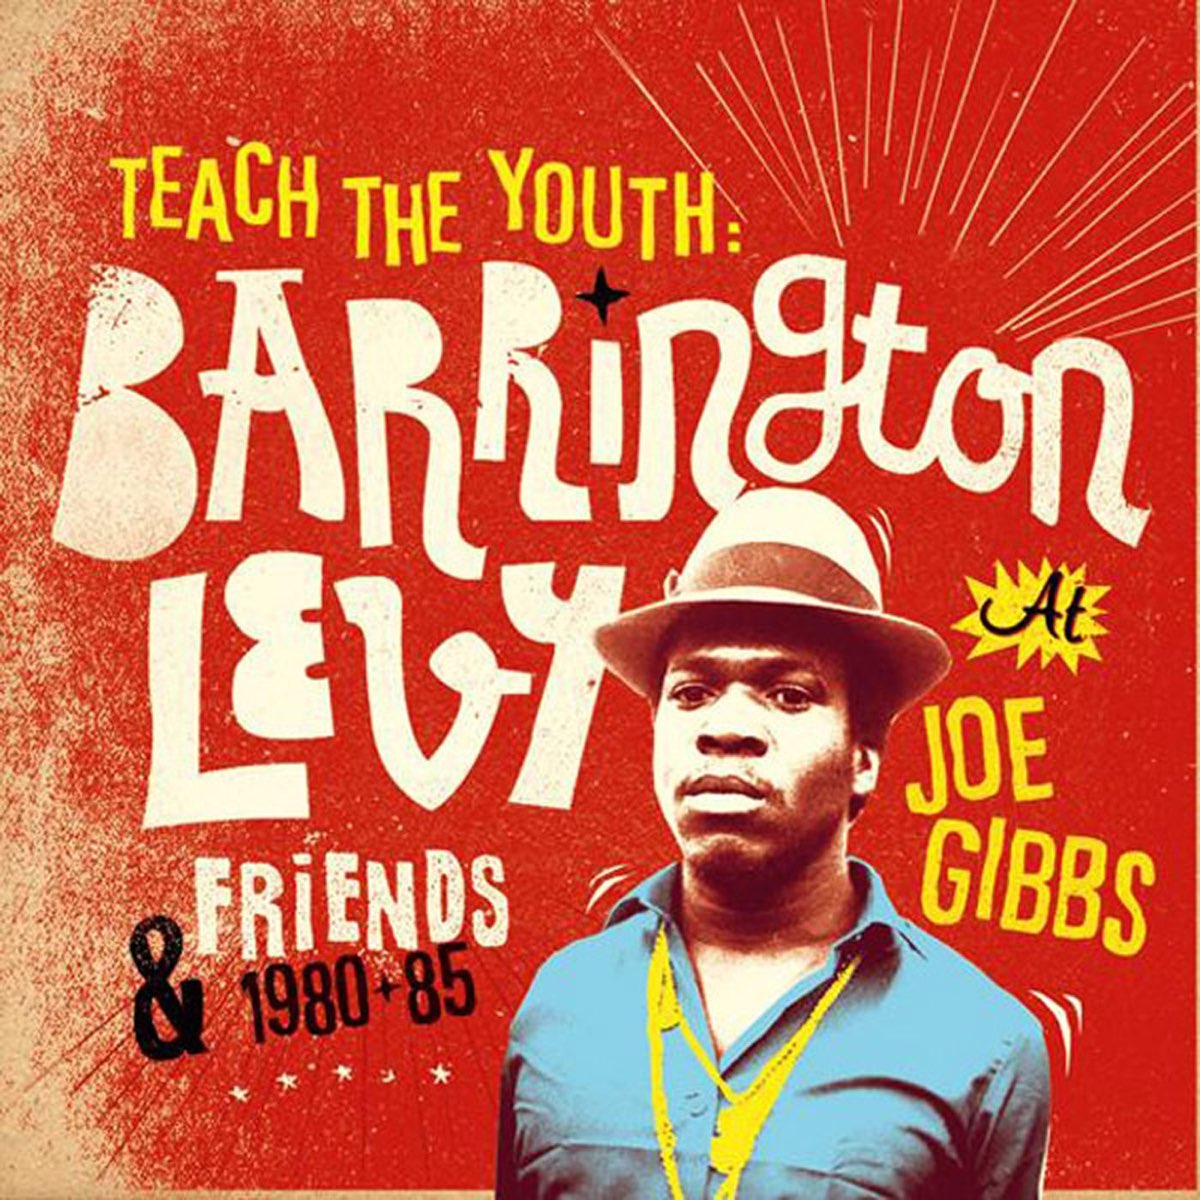 Teach the Youth by Barrington Levy on Apple Music